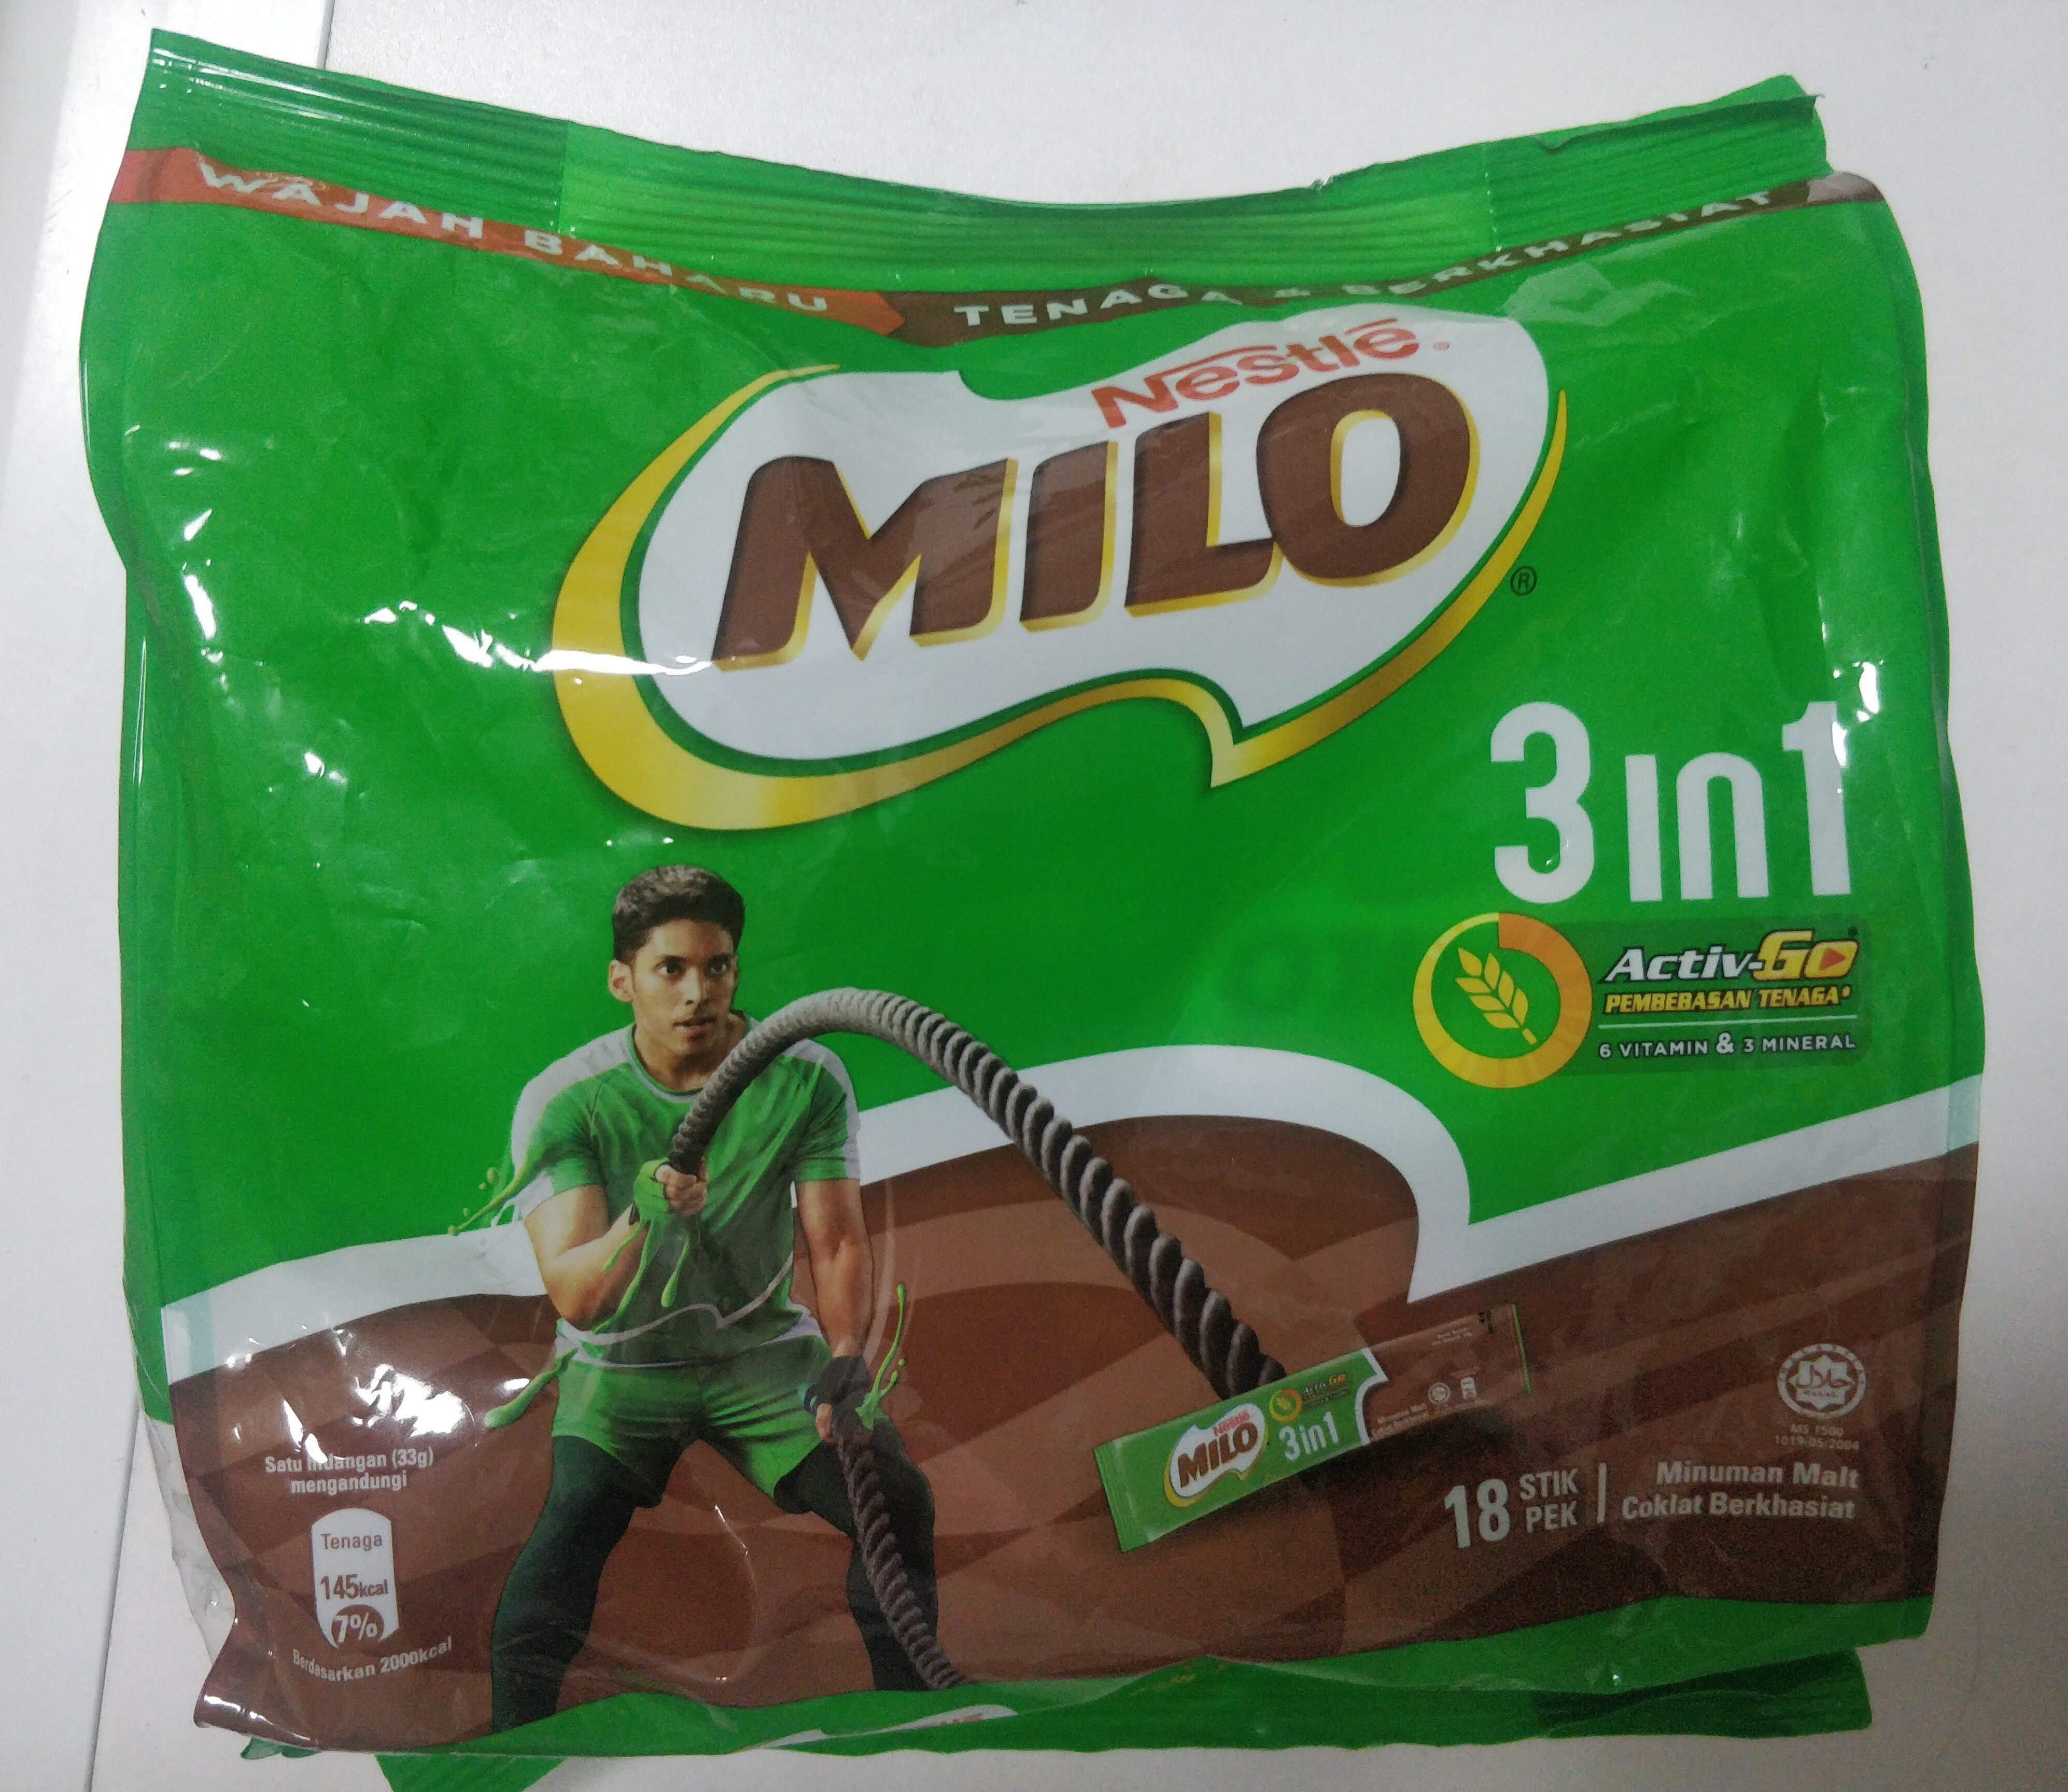 Milo 3 in 1 - Product - en